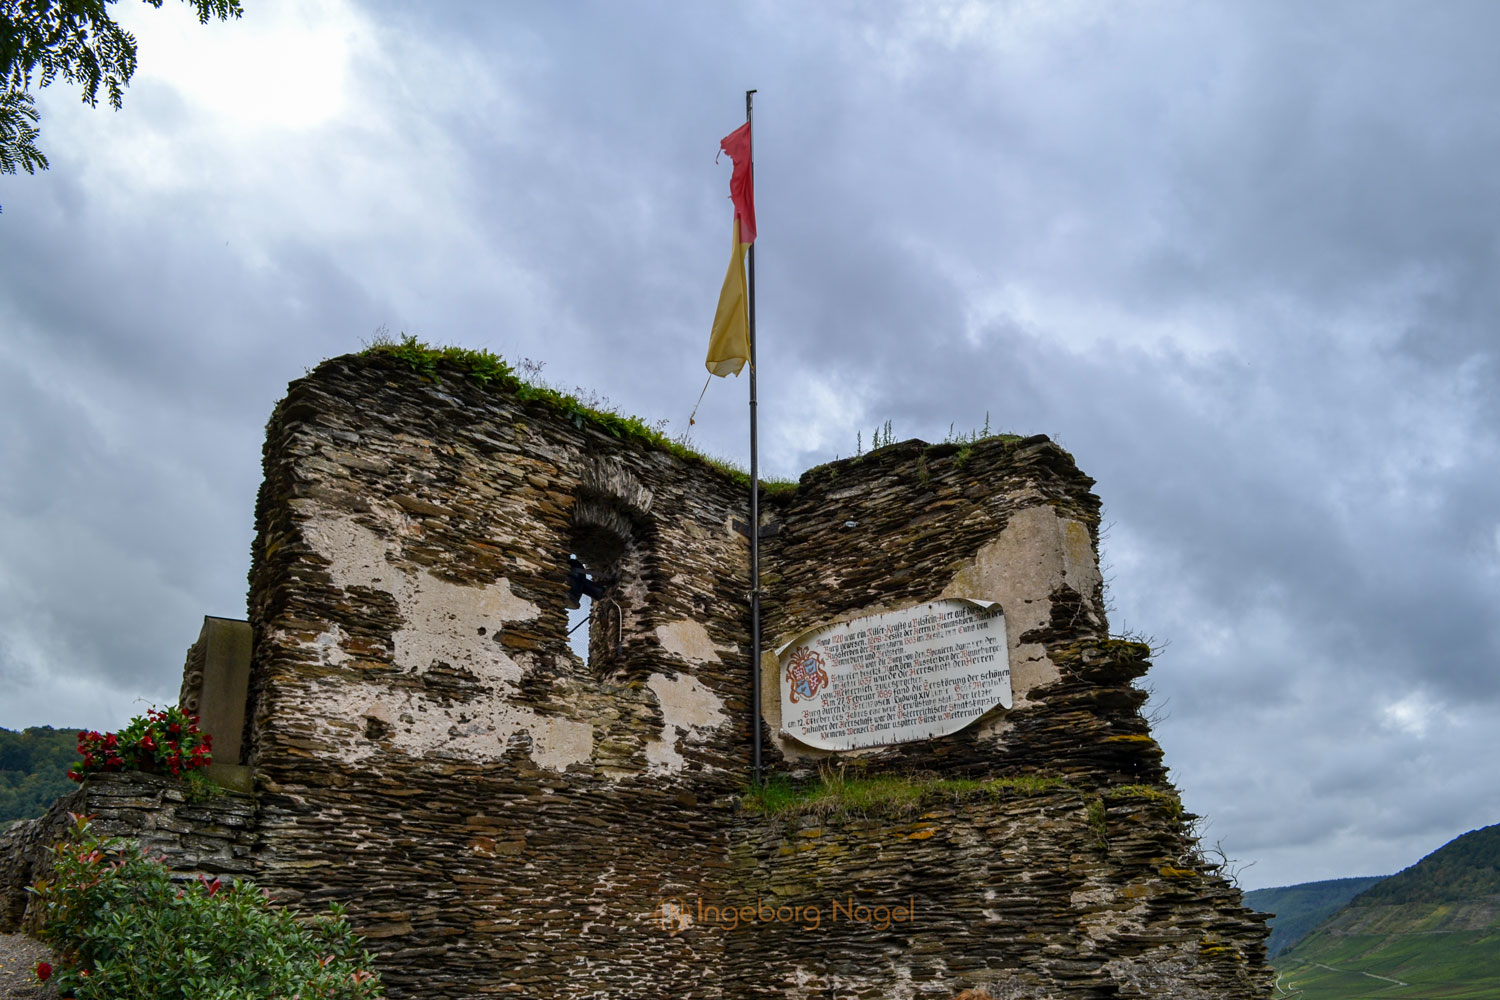 Burg Metternich über Beilstein an der Mosel